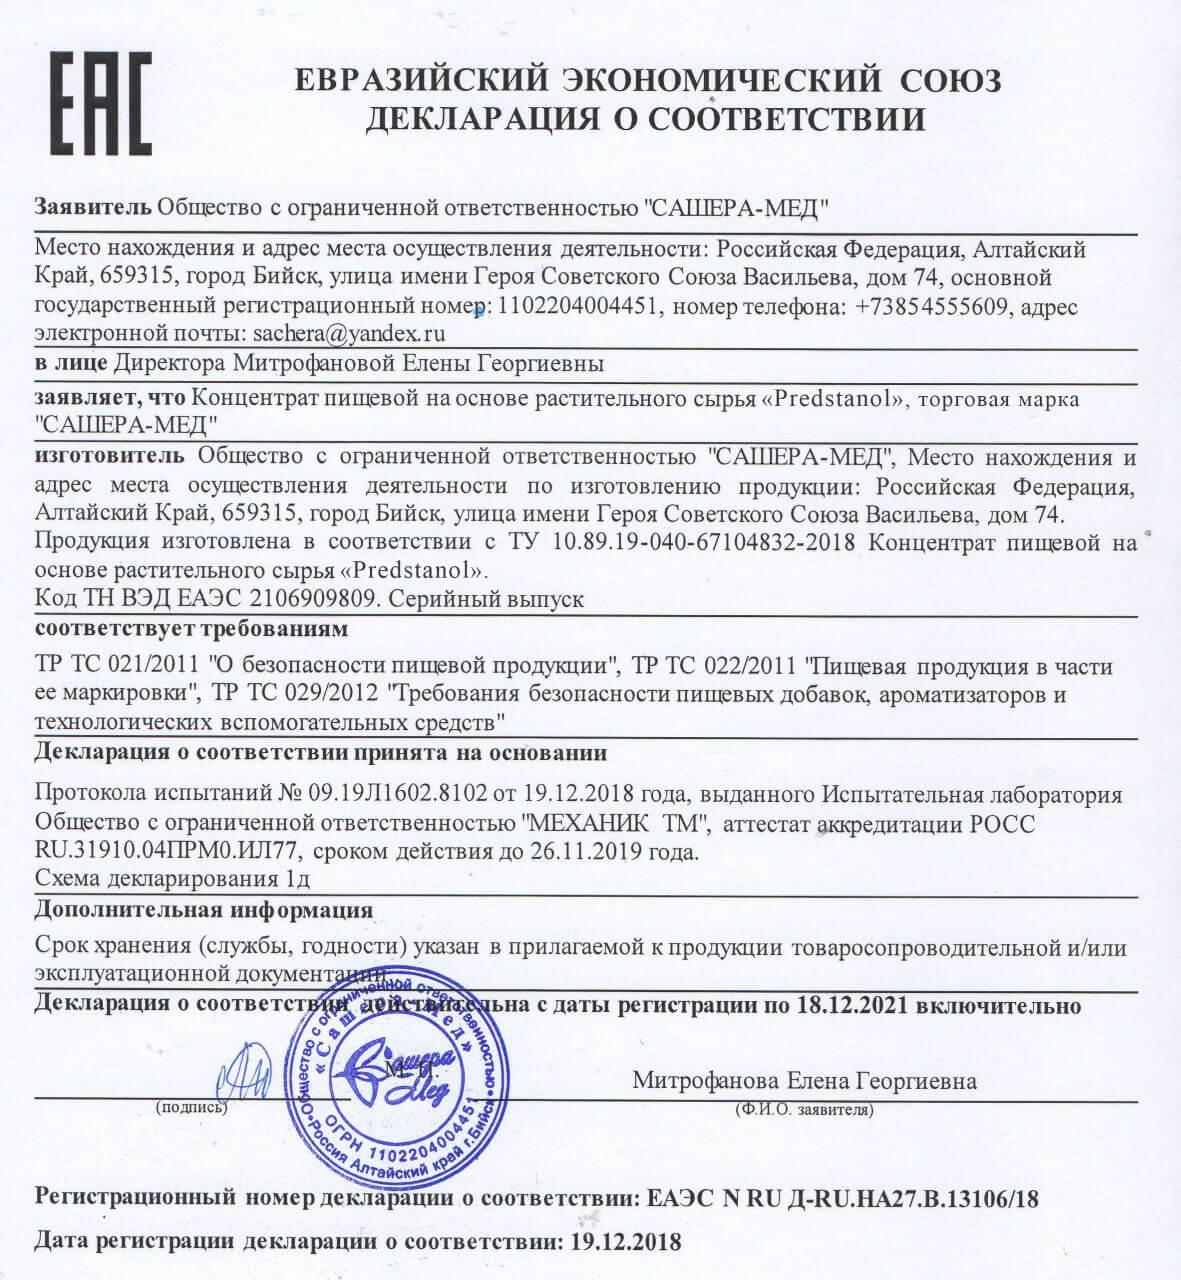 Сертификат на предстанол в Брянске